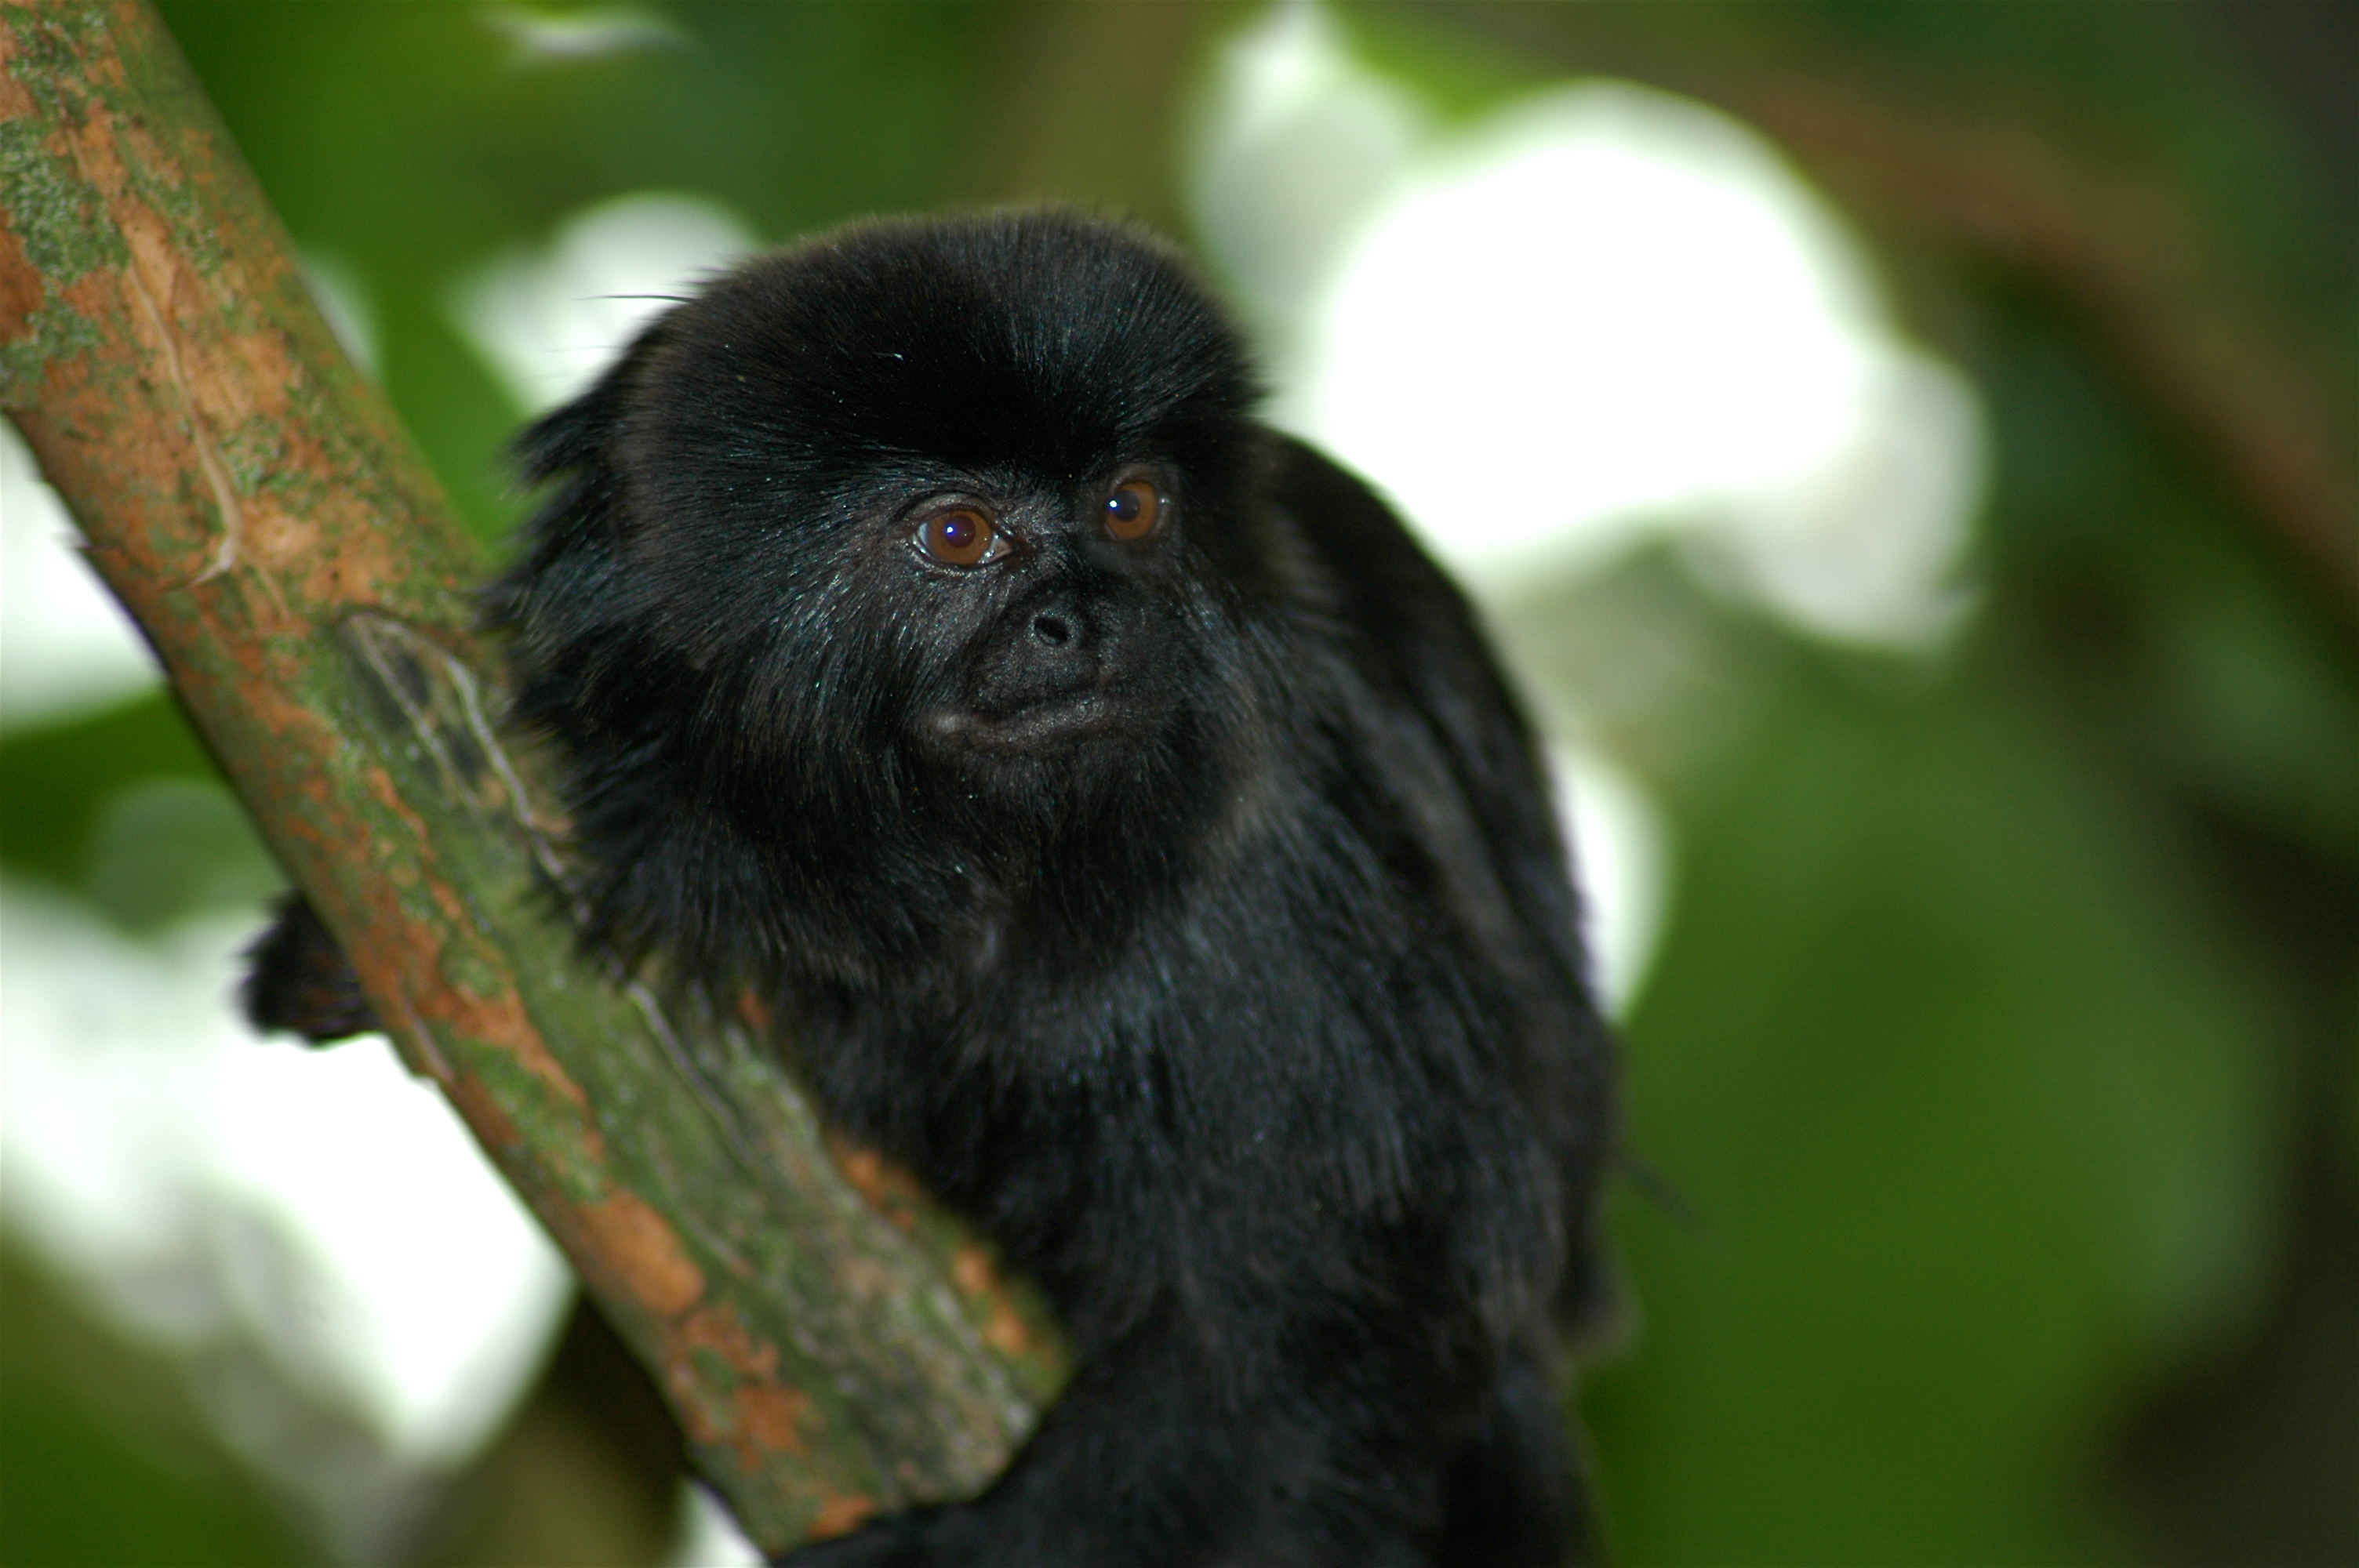 Image of Goeldi's marmoset